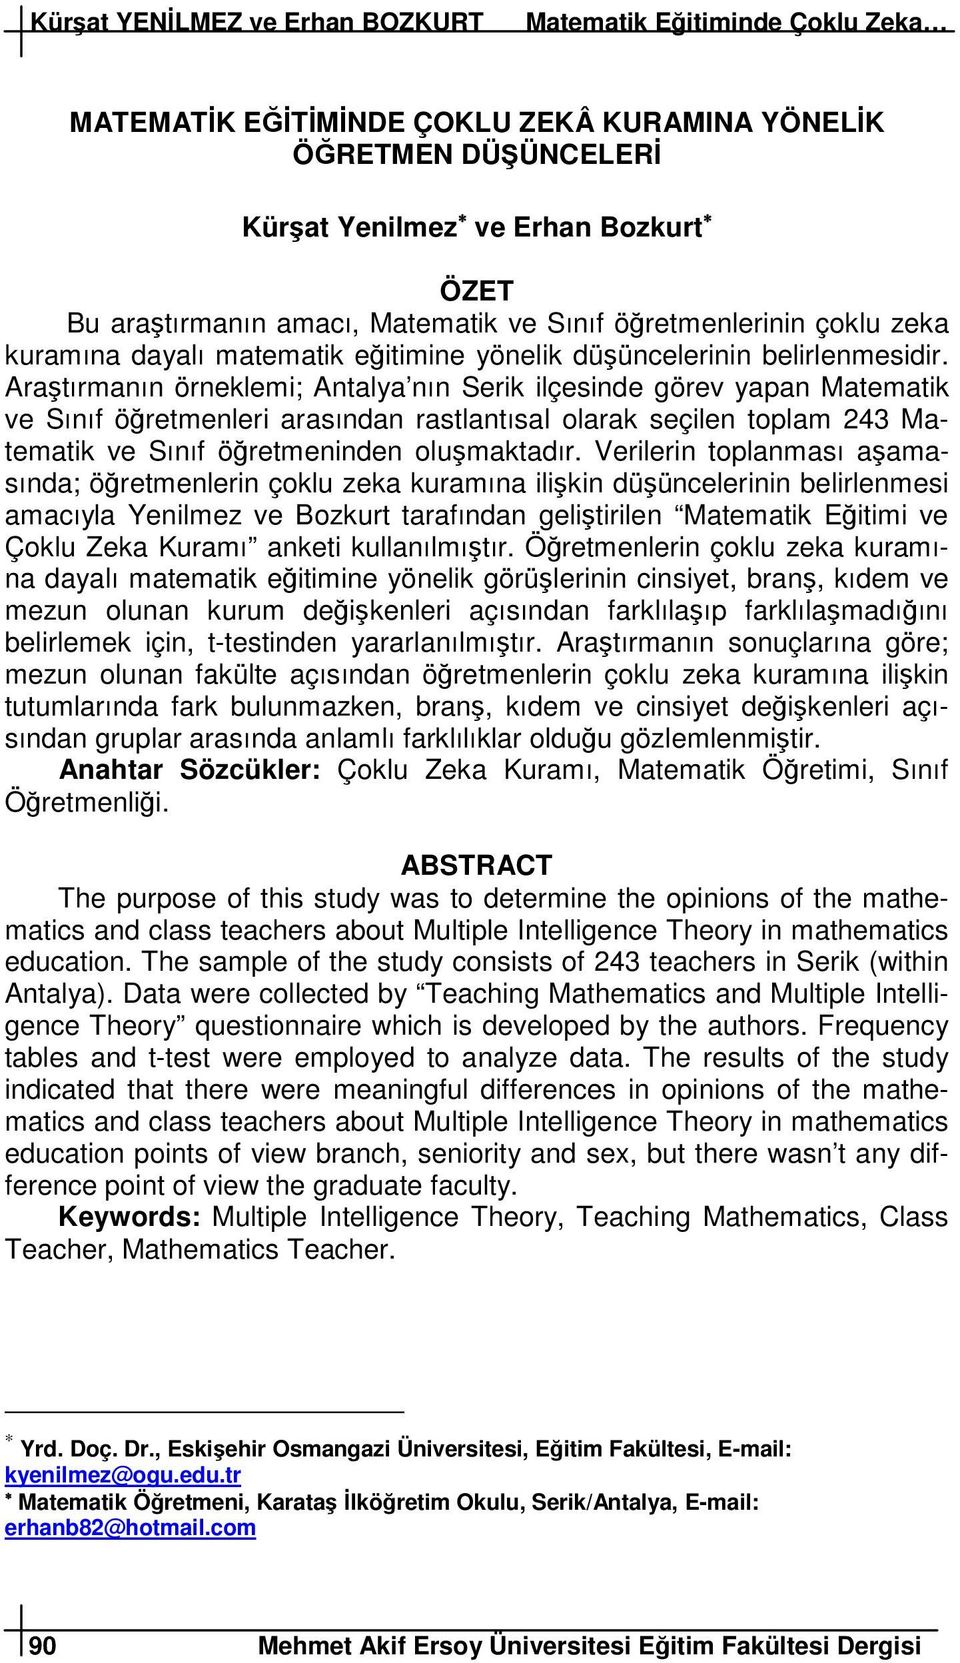 Aratırmanın örneklemi; Antalya nın Serik ilçesinde görev yapan Matematik ve Sınıf öretmenleri arasından rastlantısal olarak seçilen toplam 243 Matematik ve Sınıf öretmeninden olumaktadır.